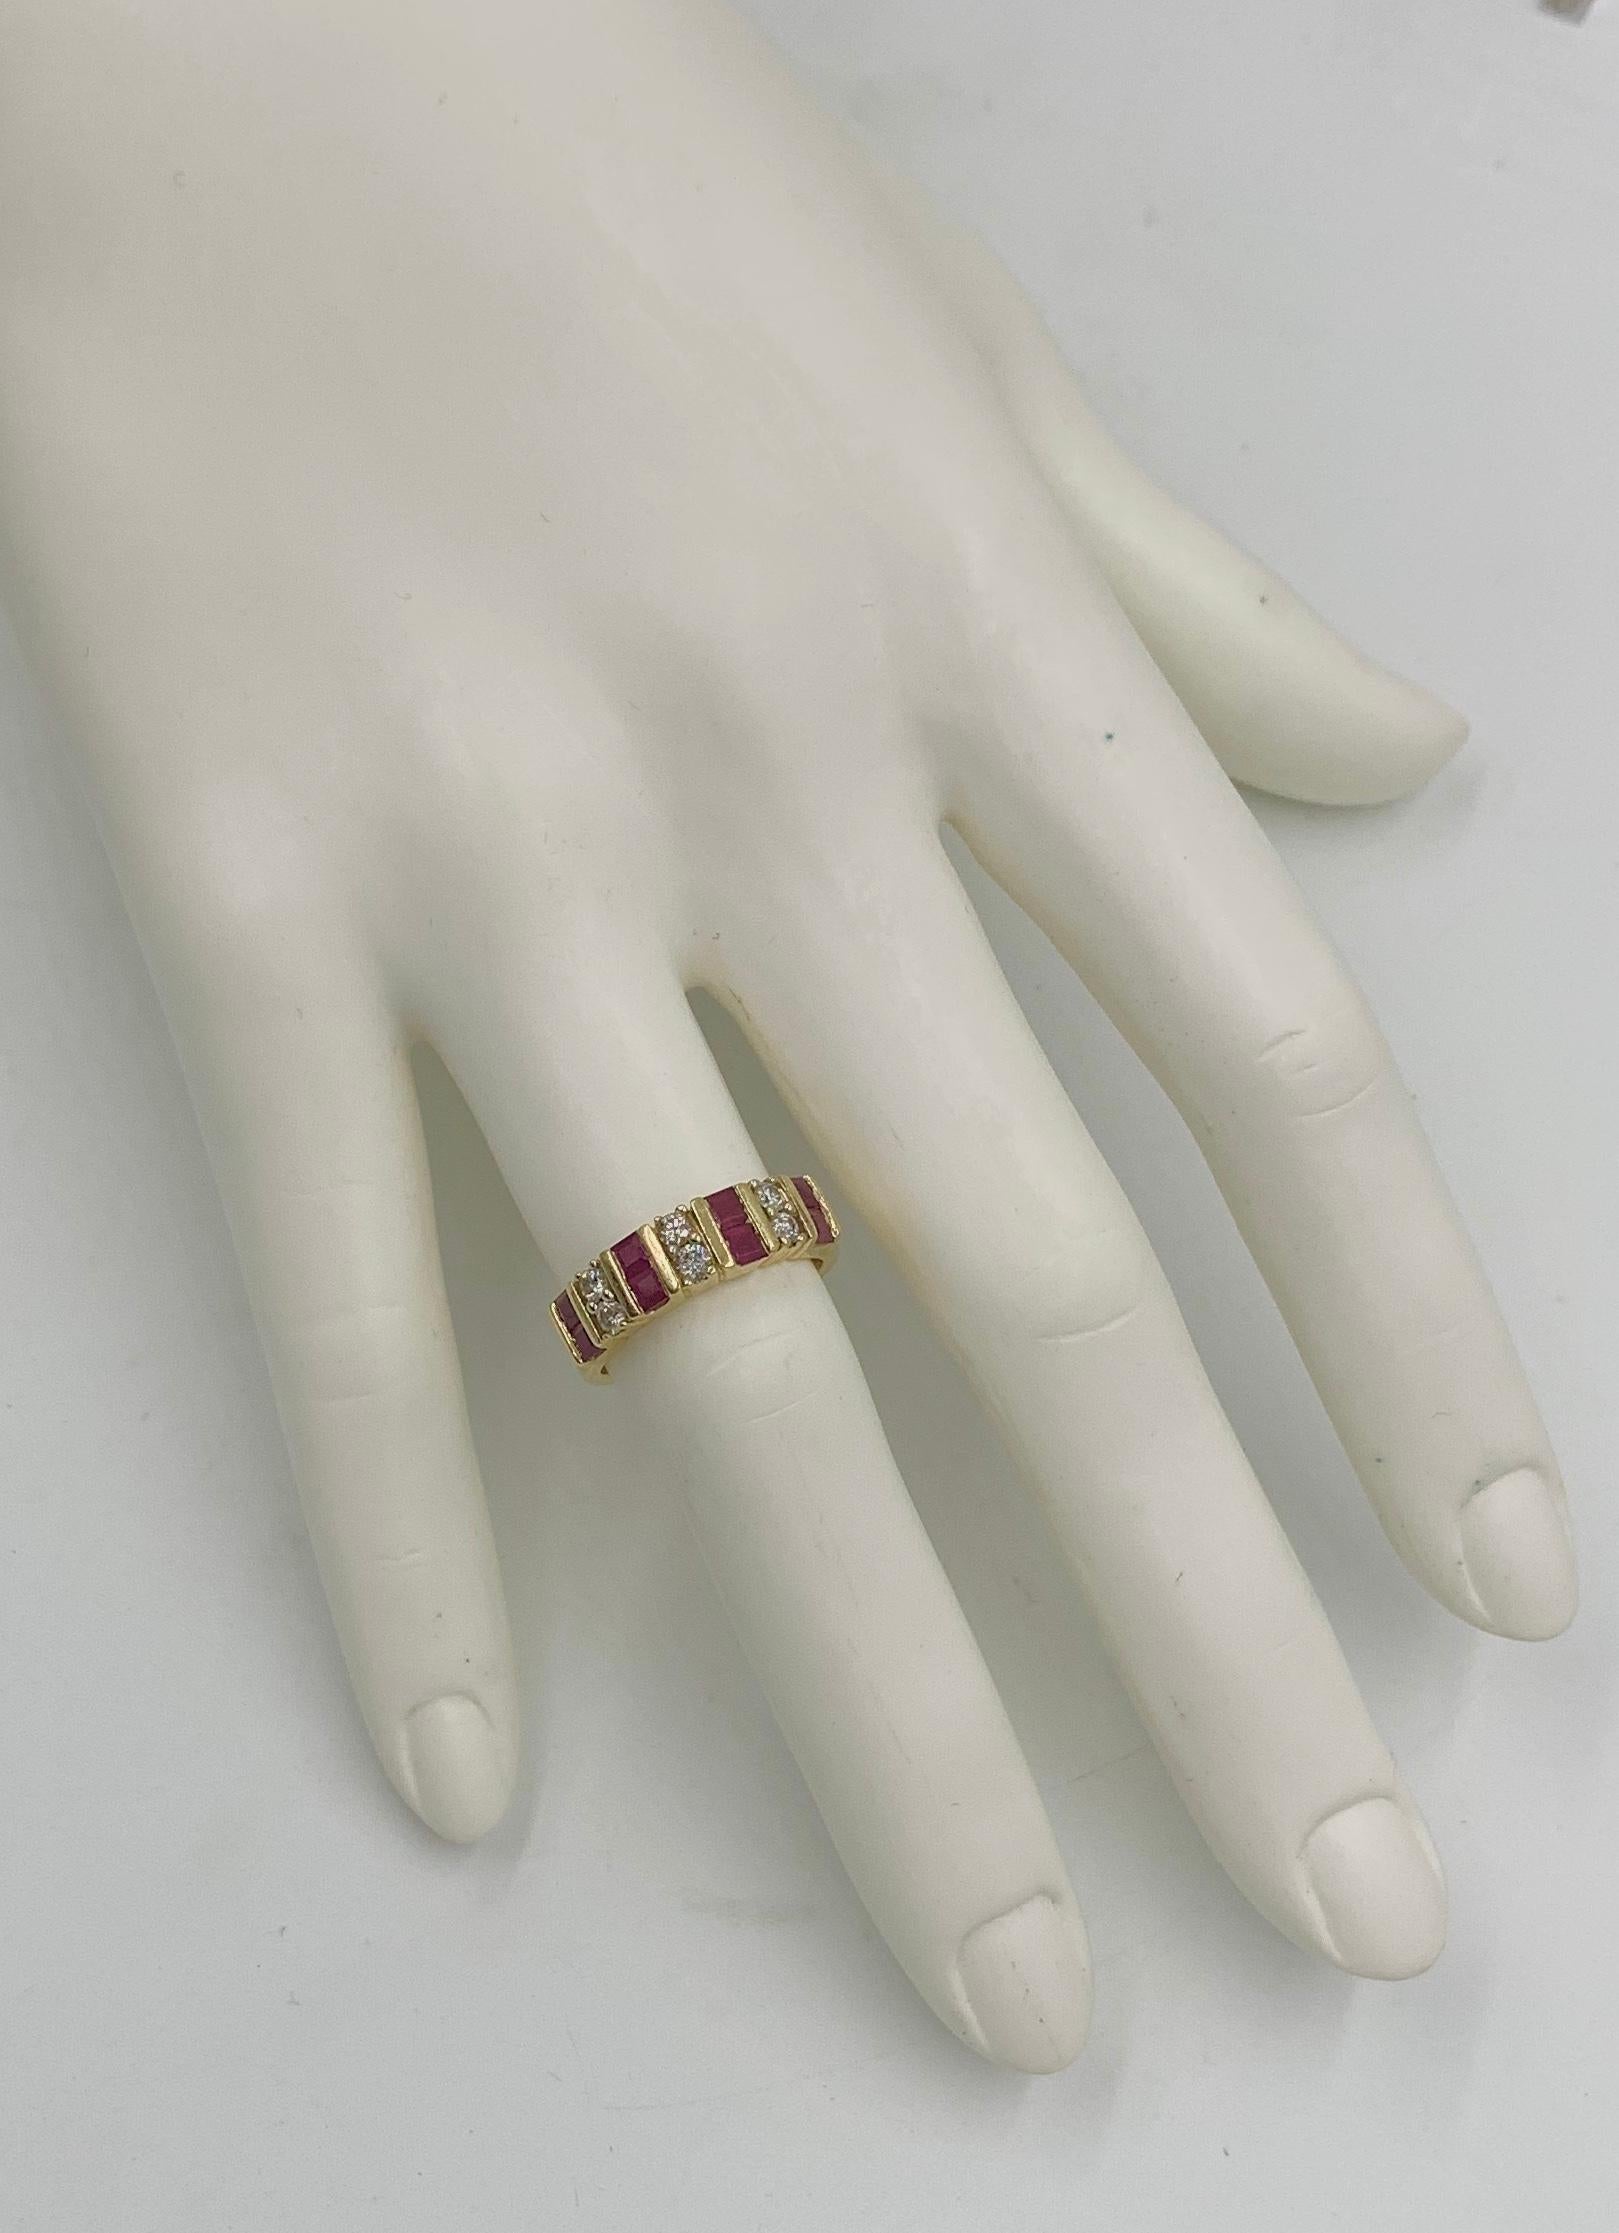 Dies ist ein klassischer Rubin und Diamant Hochzeit Verlobungsring Stack Ring.  Die acht leuchtend roten Rubine sind quadratisch geschliffen und in Kanäle gefasst, so dass sich magische rote Bänder über den Ring ziehen.  Auf beiden Seiten der Rubine